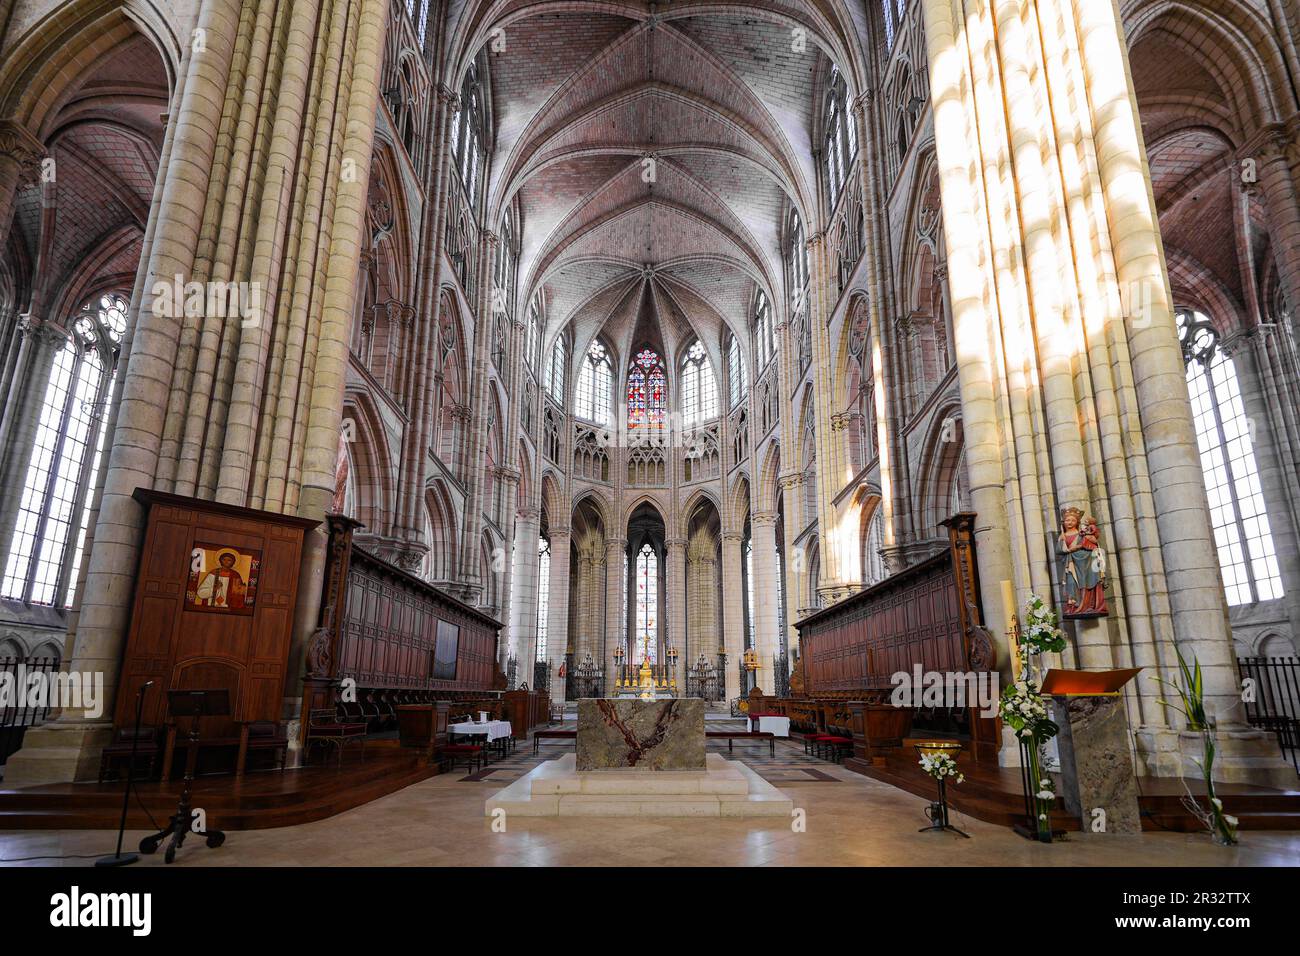 Coro de la catedral de Saint Etienne de Meaux, una iglesia católica romana en el departamento de Sena y Marne, cerca de París, Francia Foto de stock